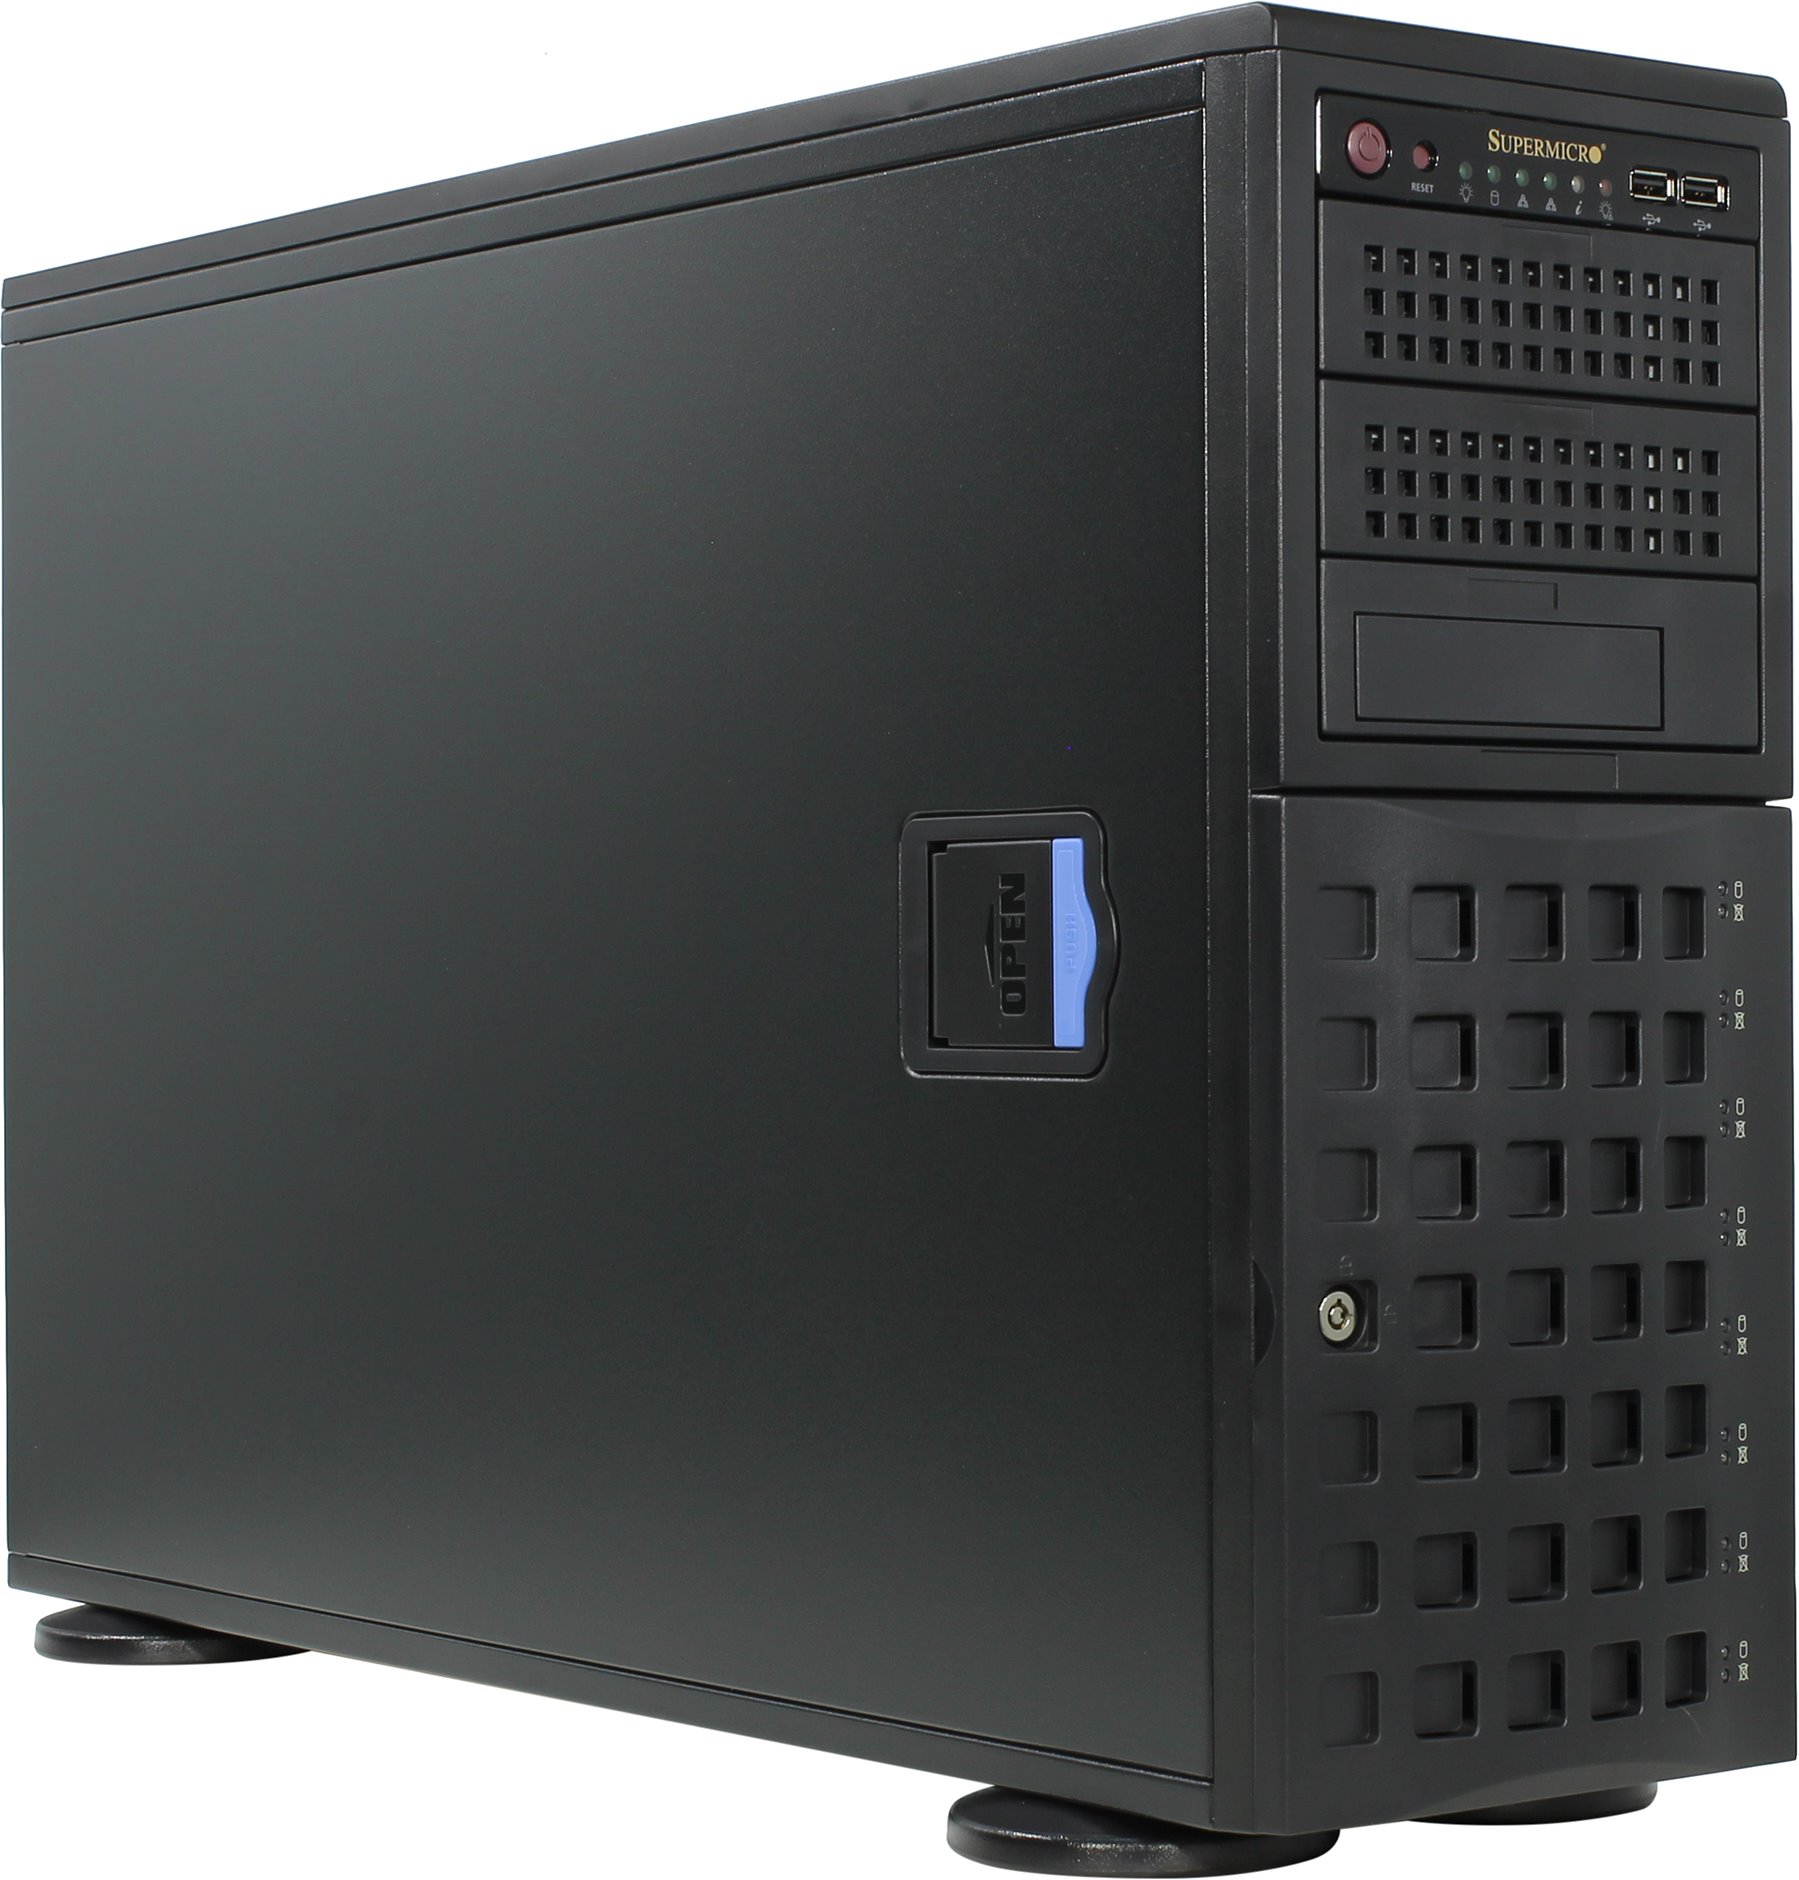 Серверная платформа SuperMicro SYS-7049P-TRT, Tower, 2 x LGA3647, Intel C622, 16 x DDR4, 8 x 3.5" SATA, 2x10 Gigabit Ethernet (10 Гбит/с), 1280 Вт